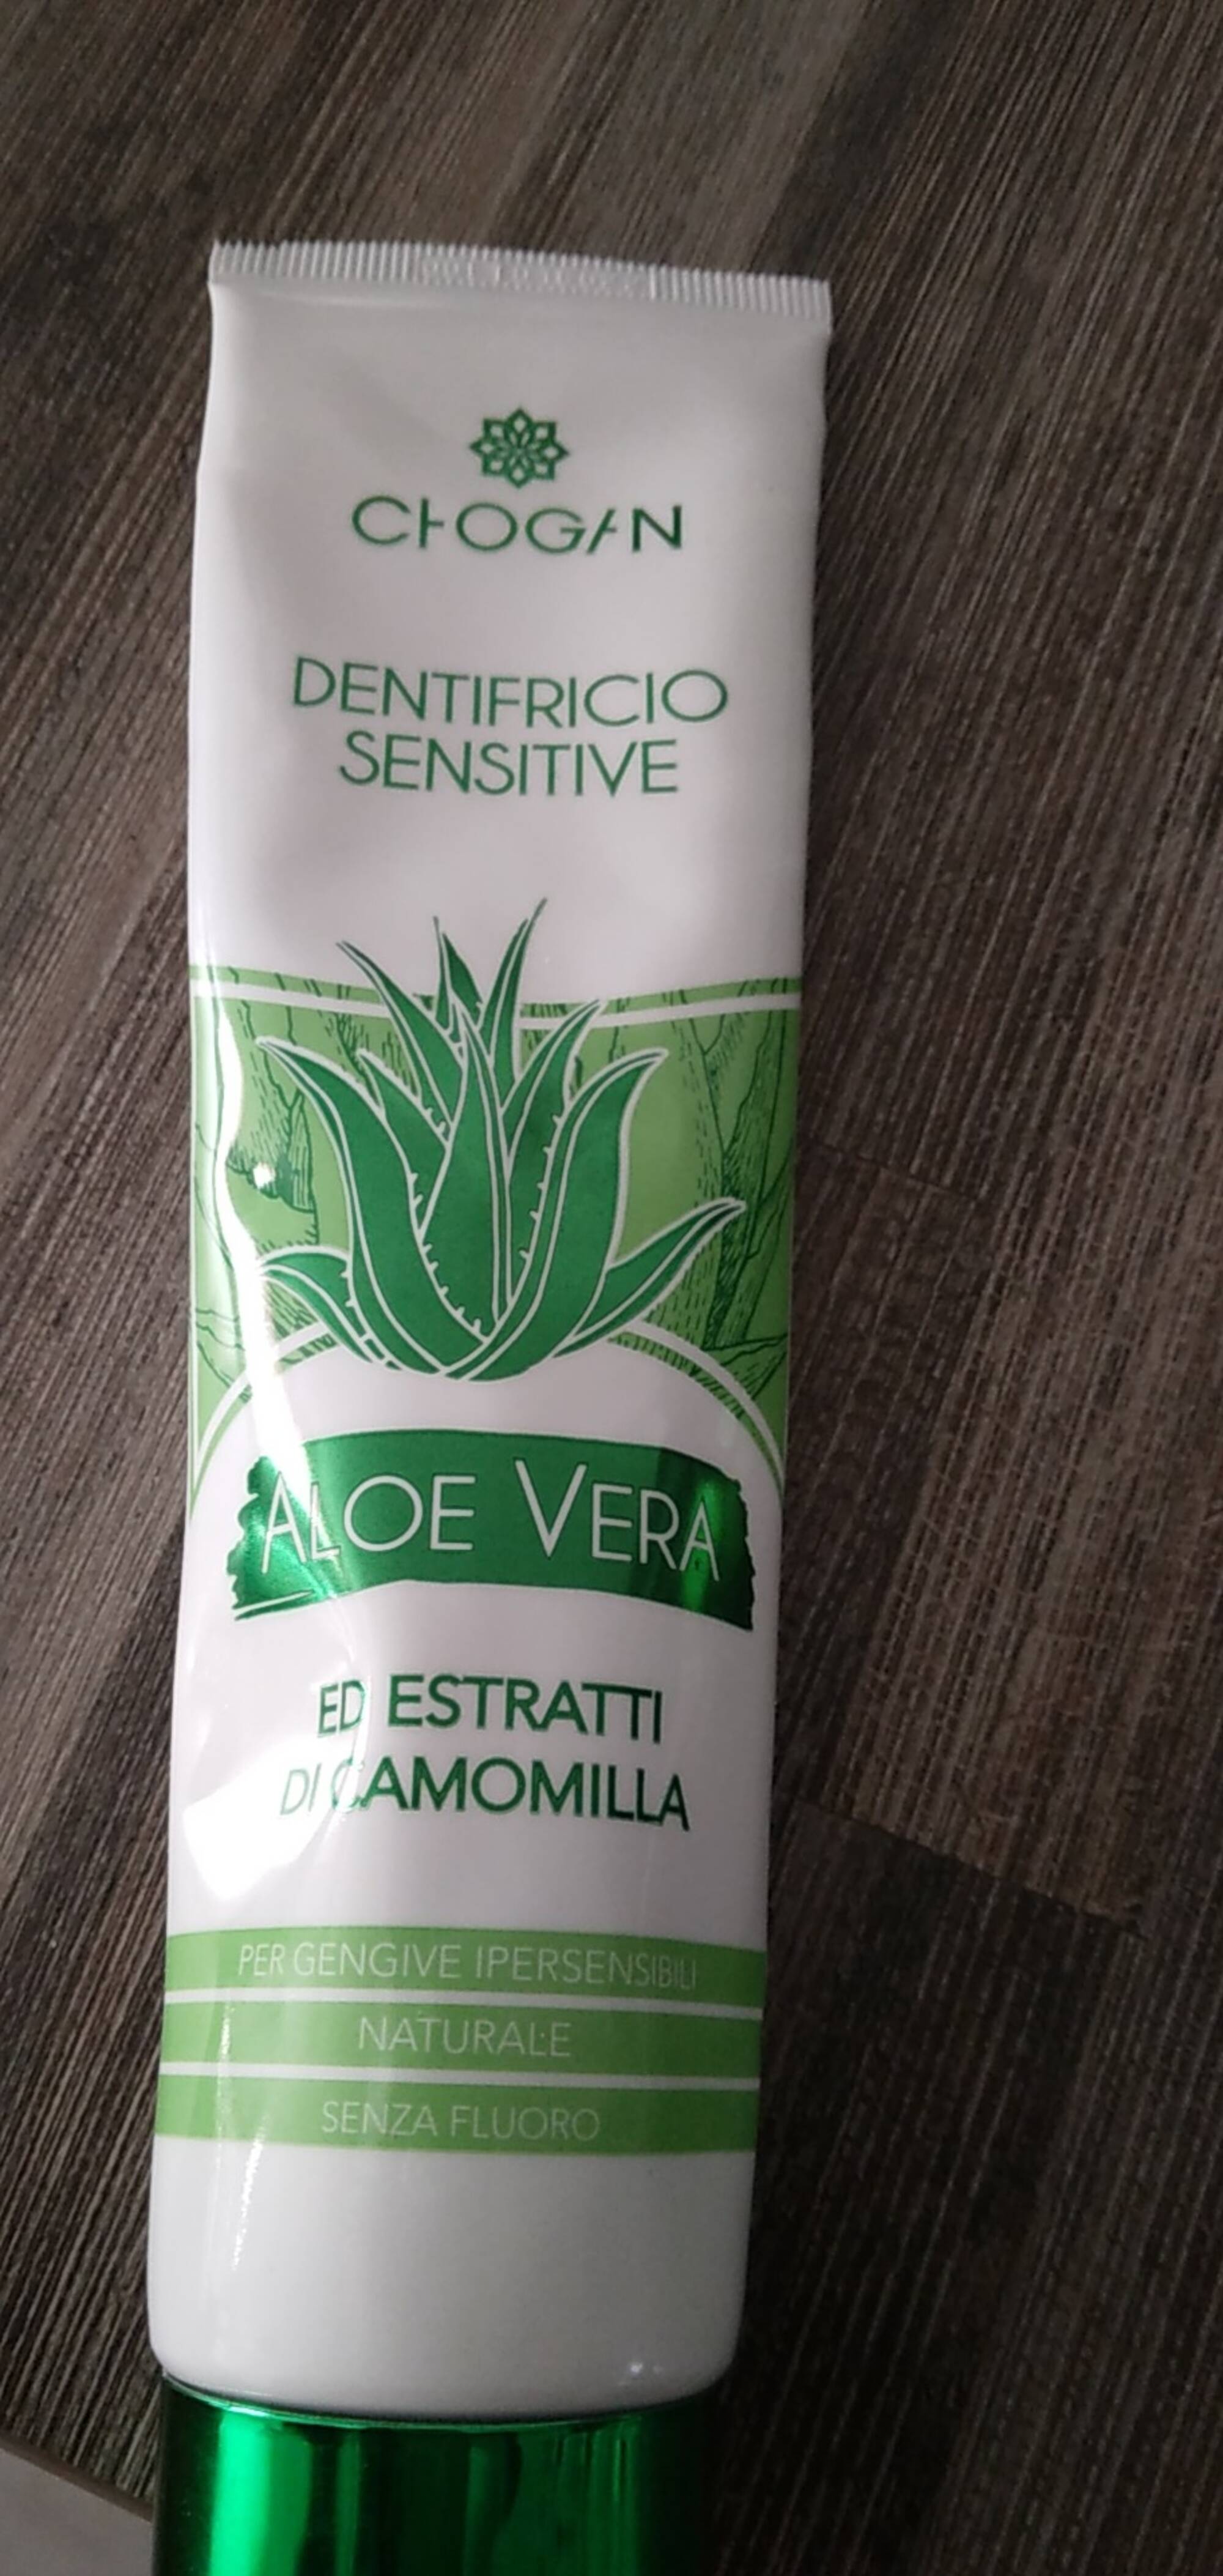 CHOGAN - Aloe vera - Dentifricio sensitive